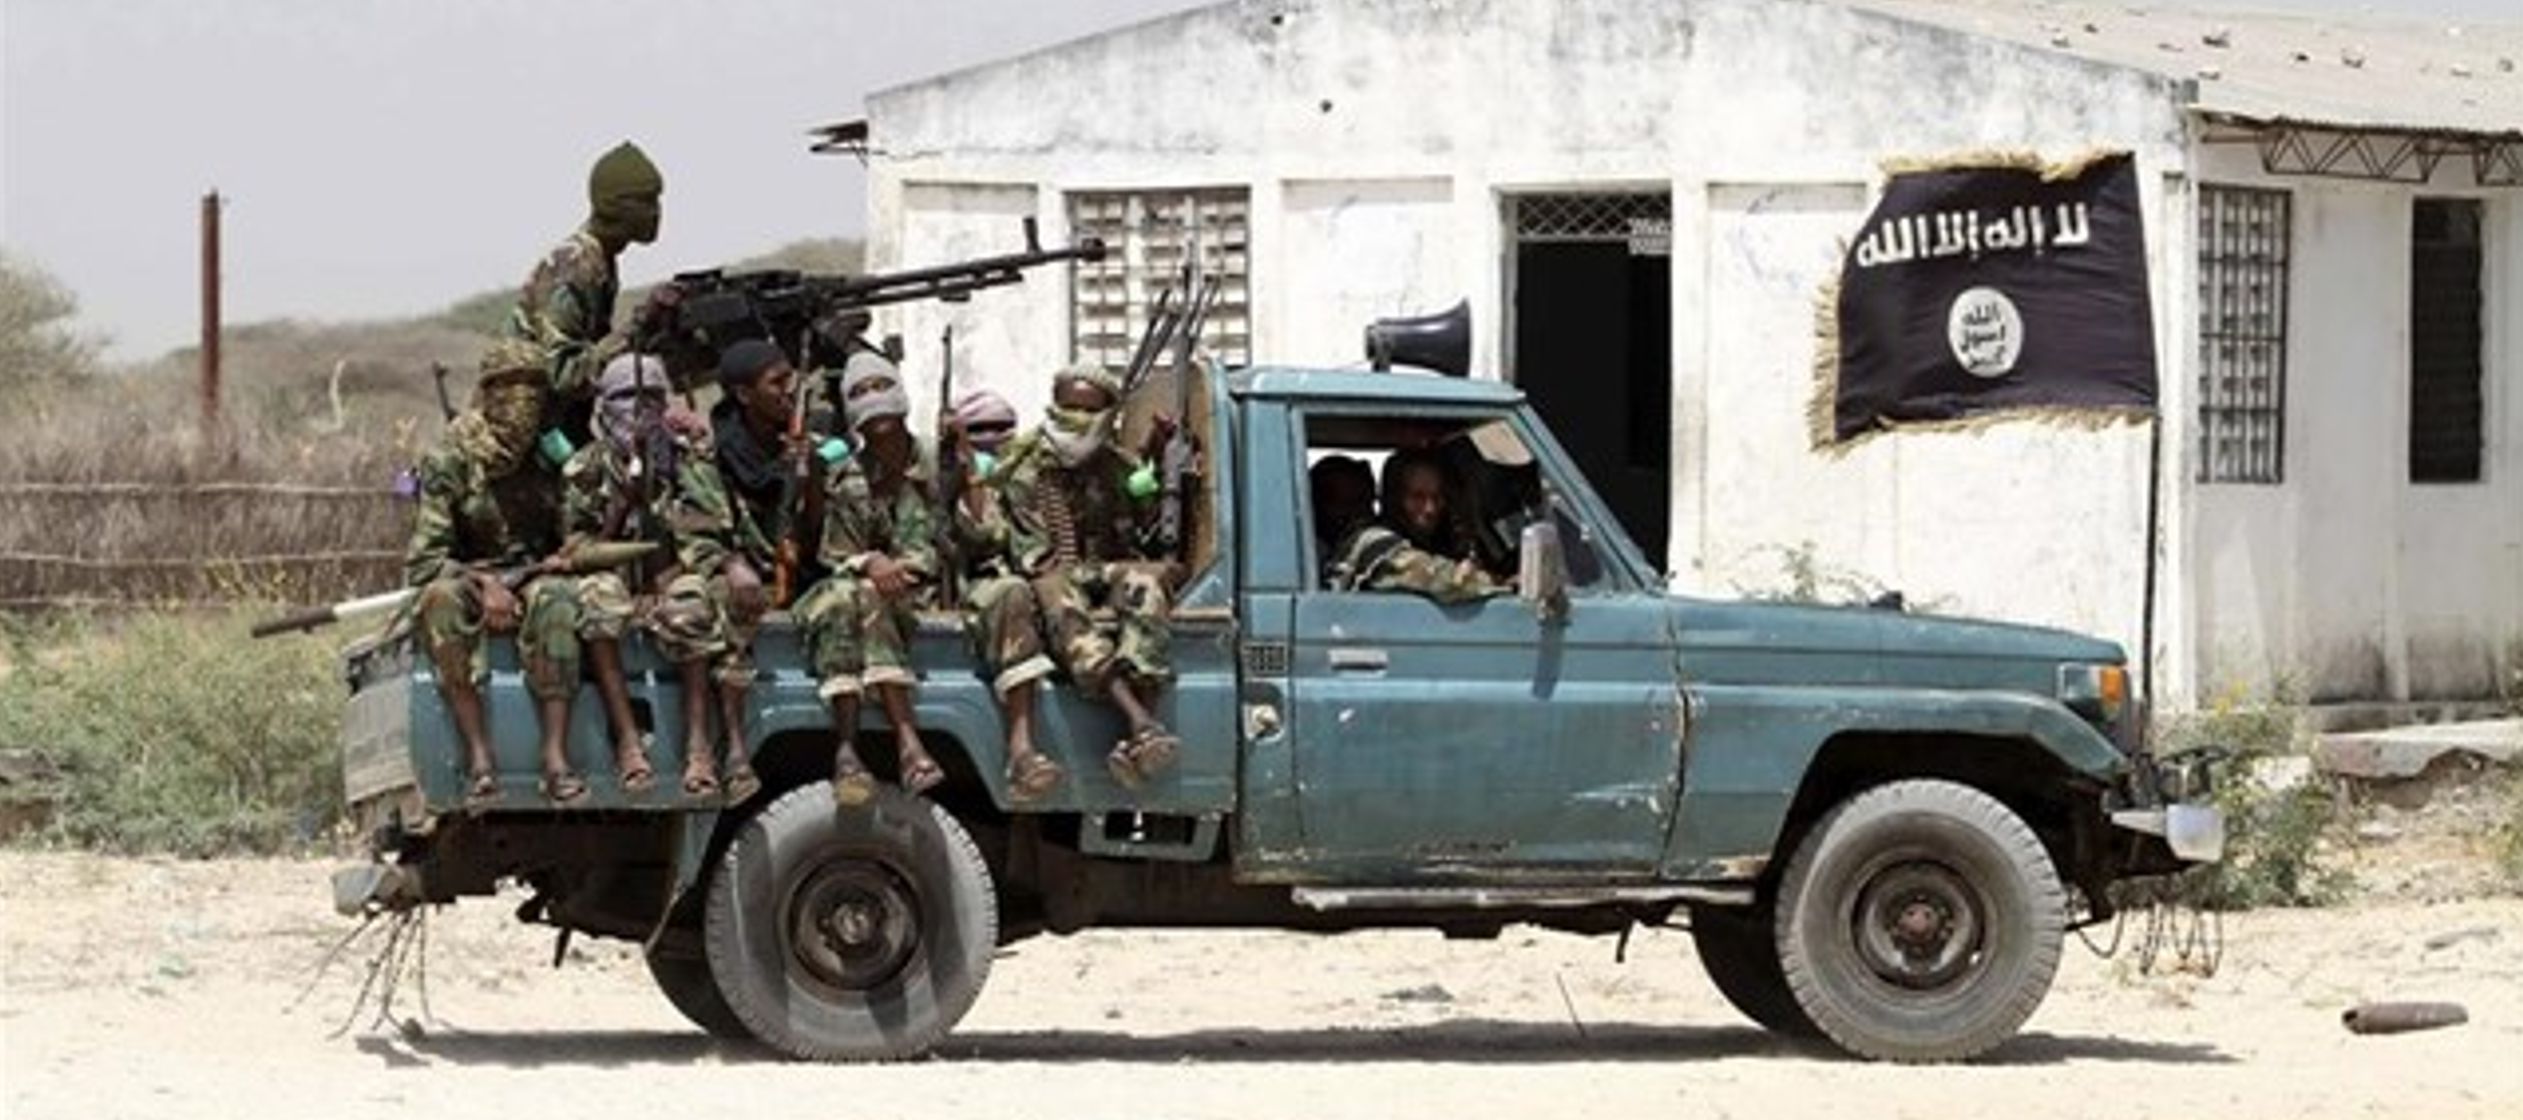 Por el momento, ni la milicia islamista ni el Gobierno federal somalí se han pronunciado...